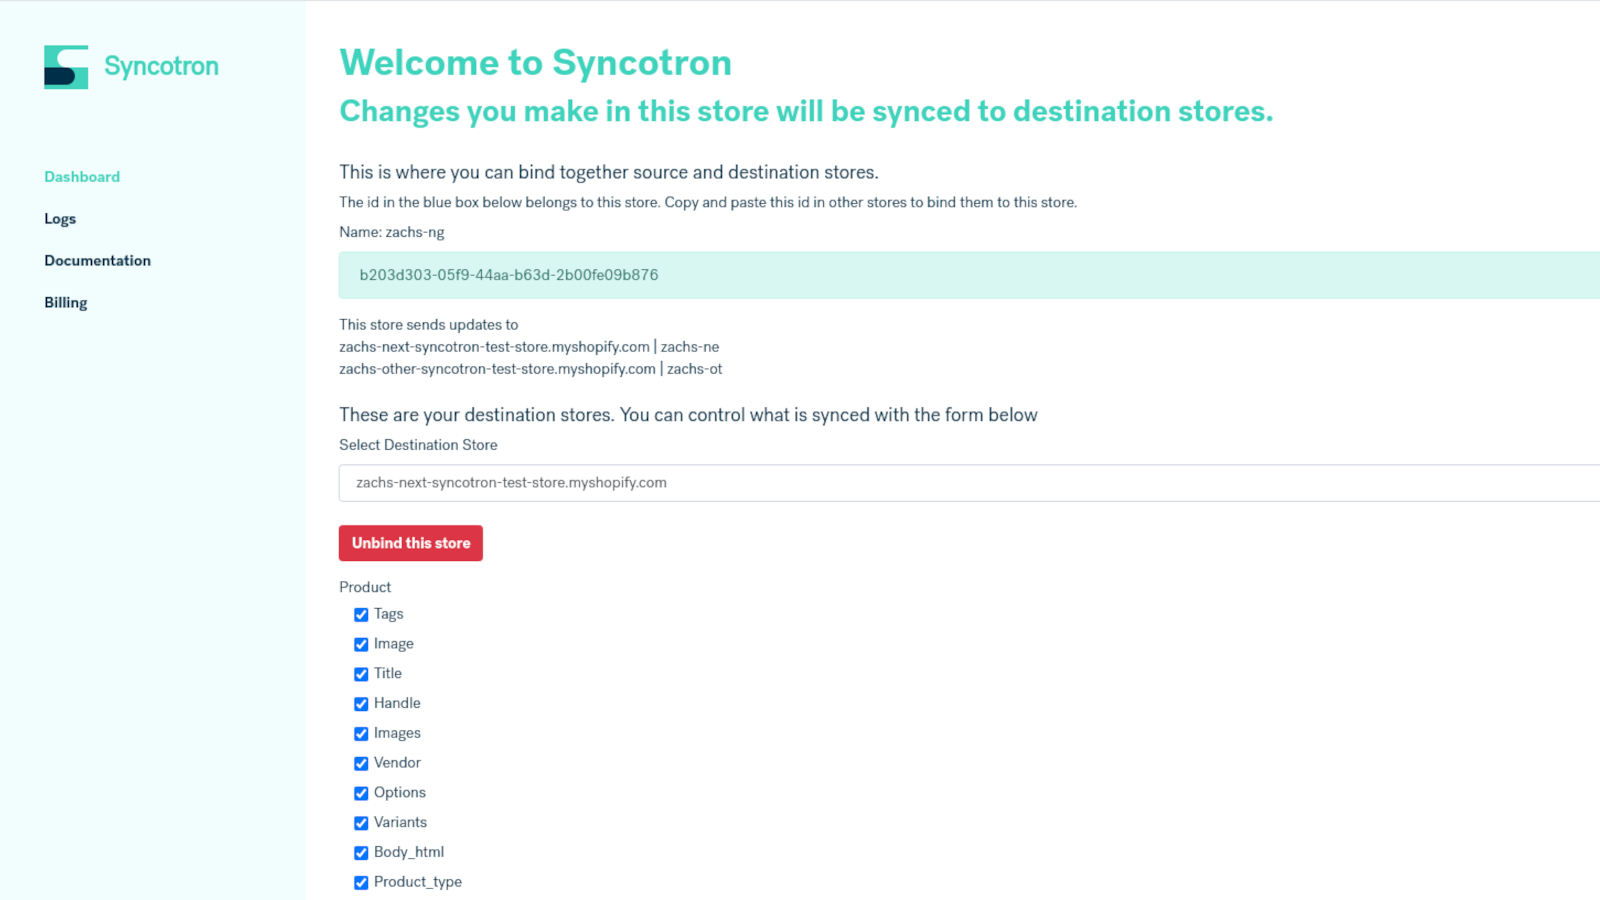 Bienvenue à Syncotron - un contrôle granulaire sur votre synchronisation